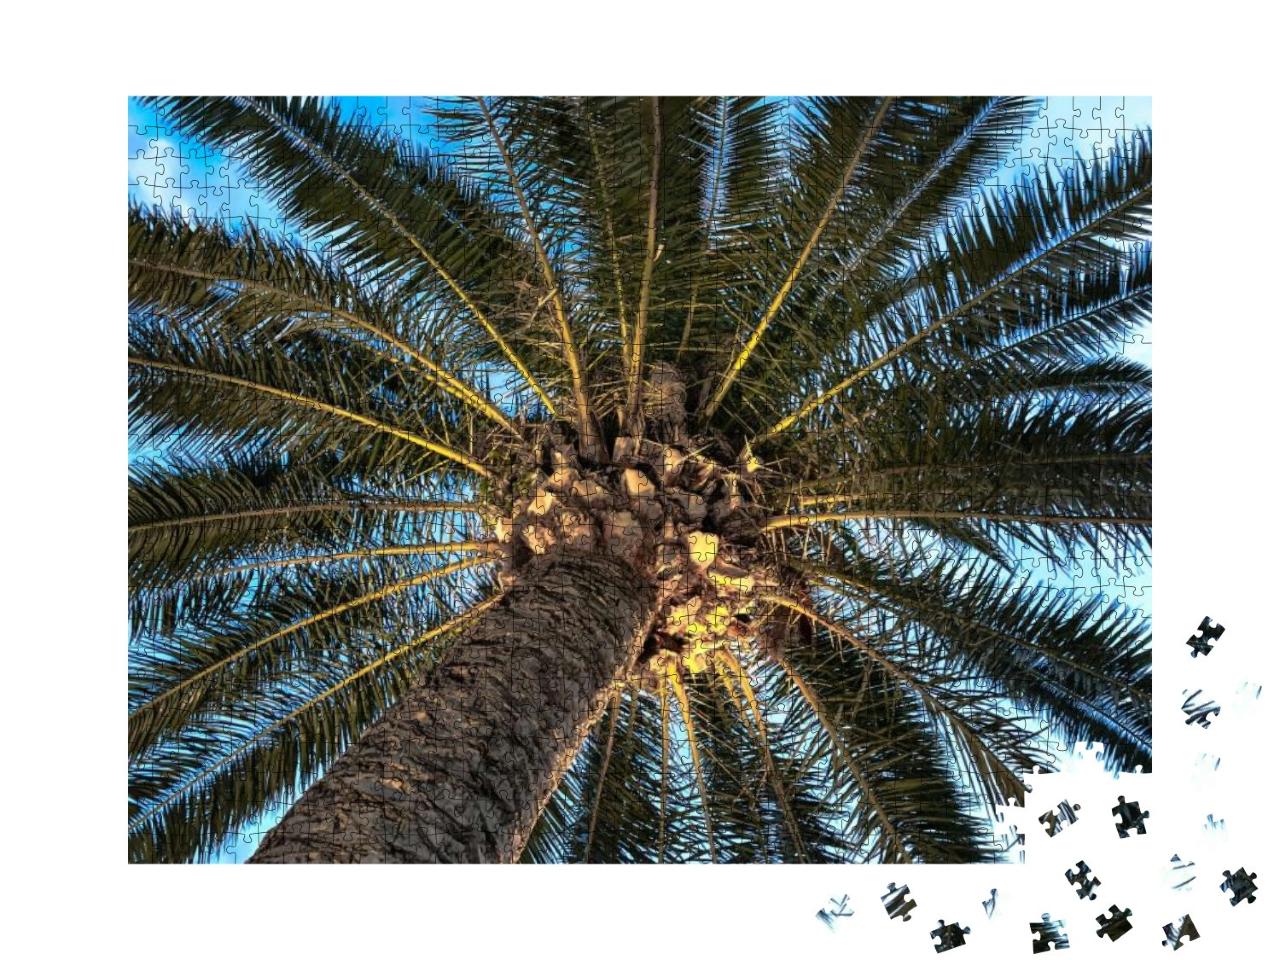 Puzzle 1000 Teile „Ansicht von unten: Eine Palme“